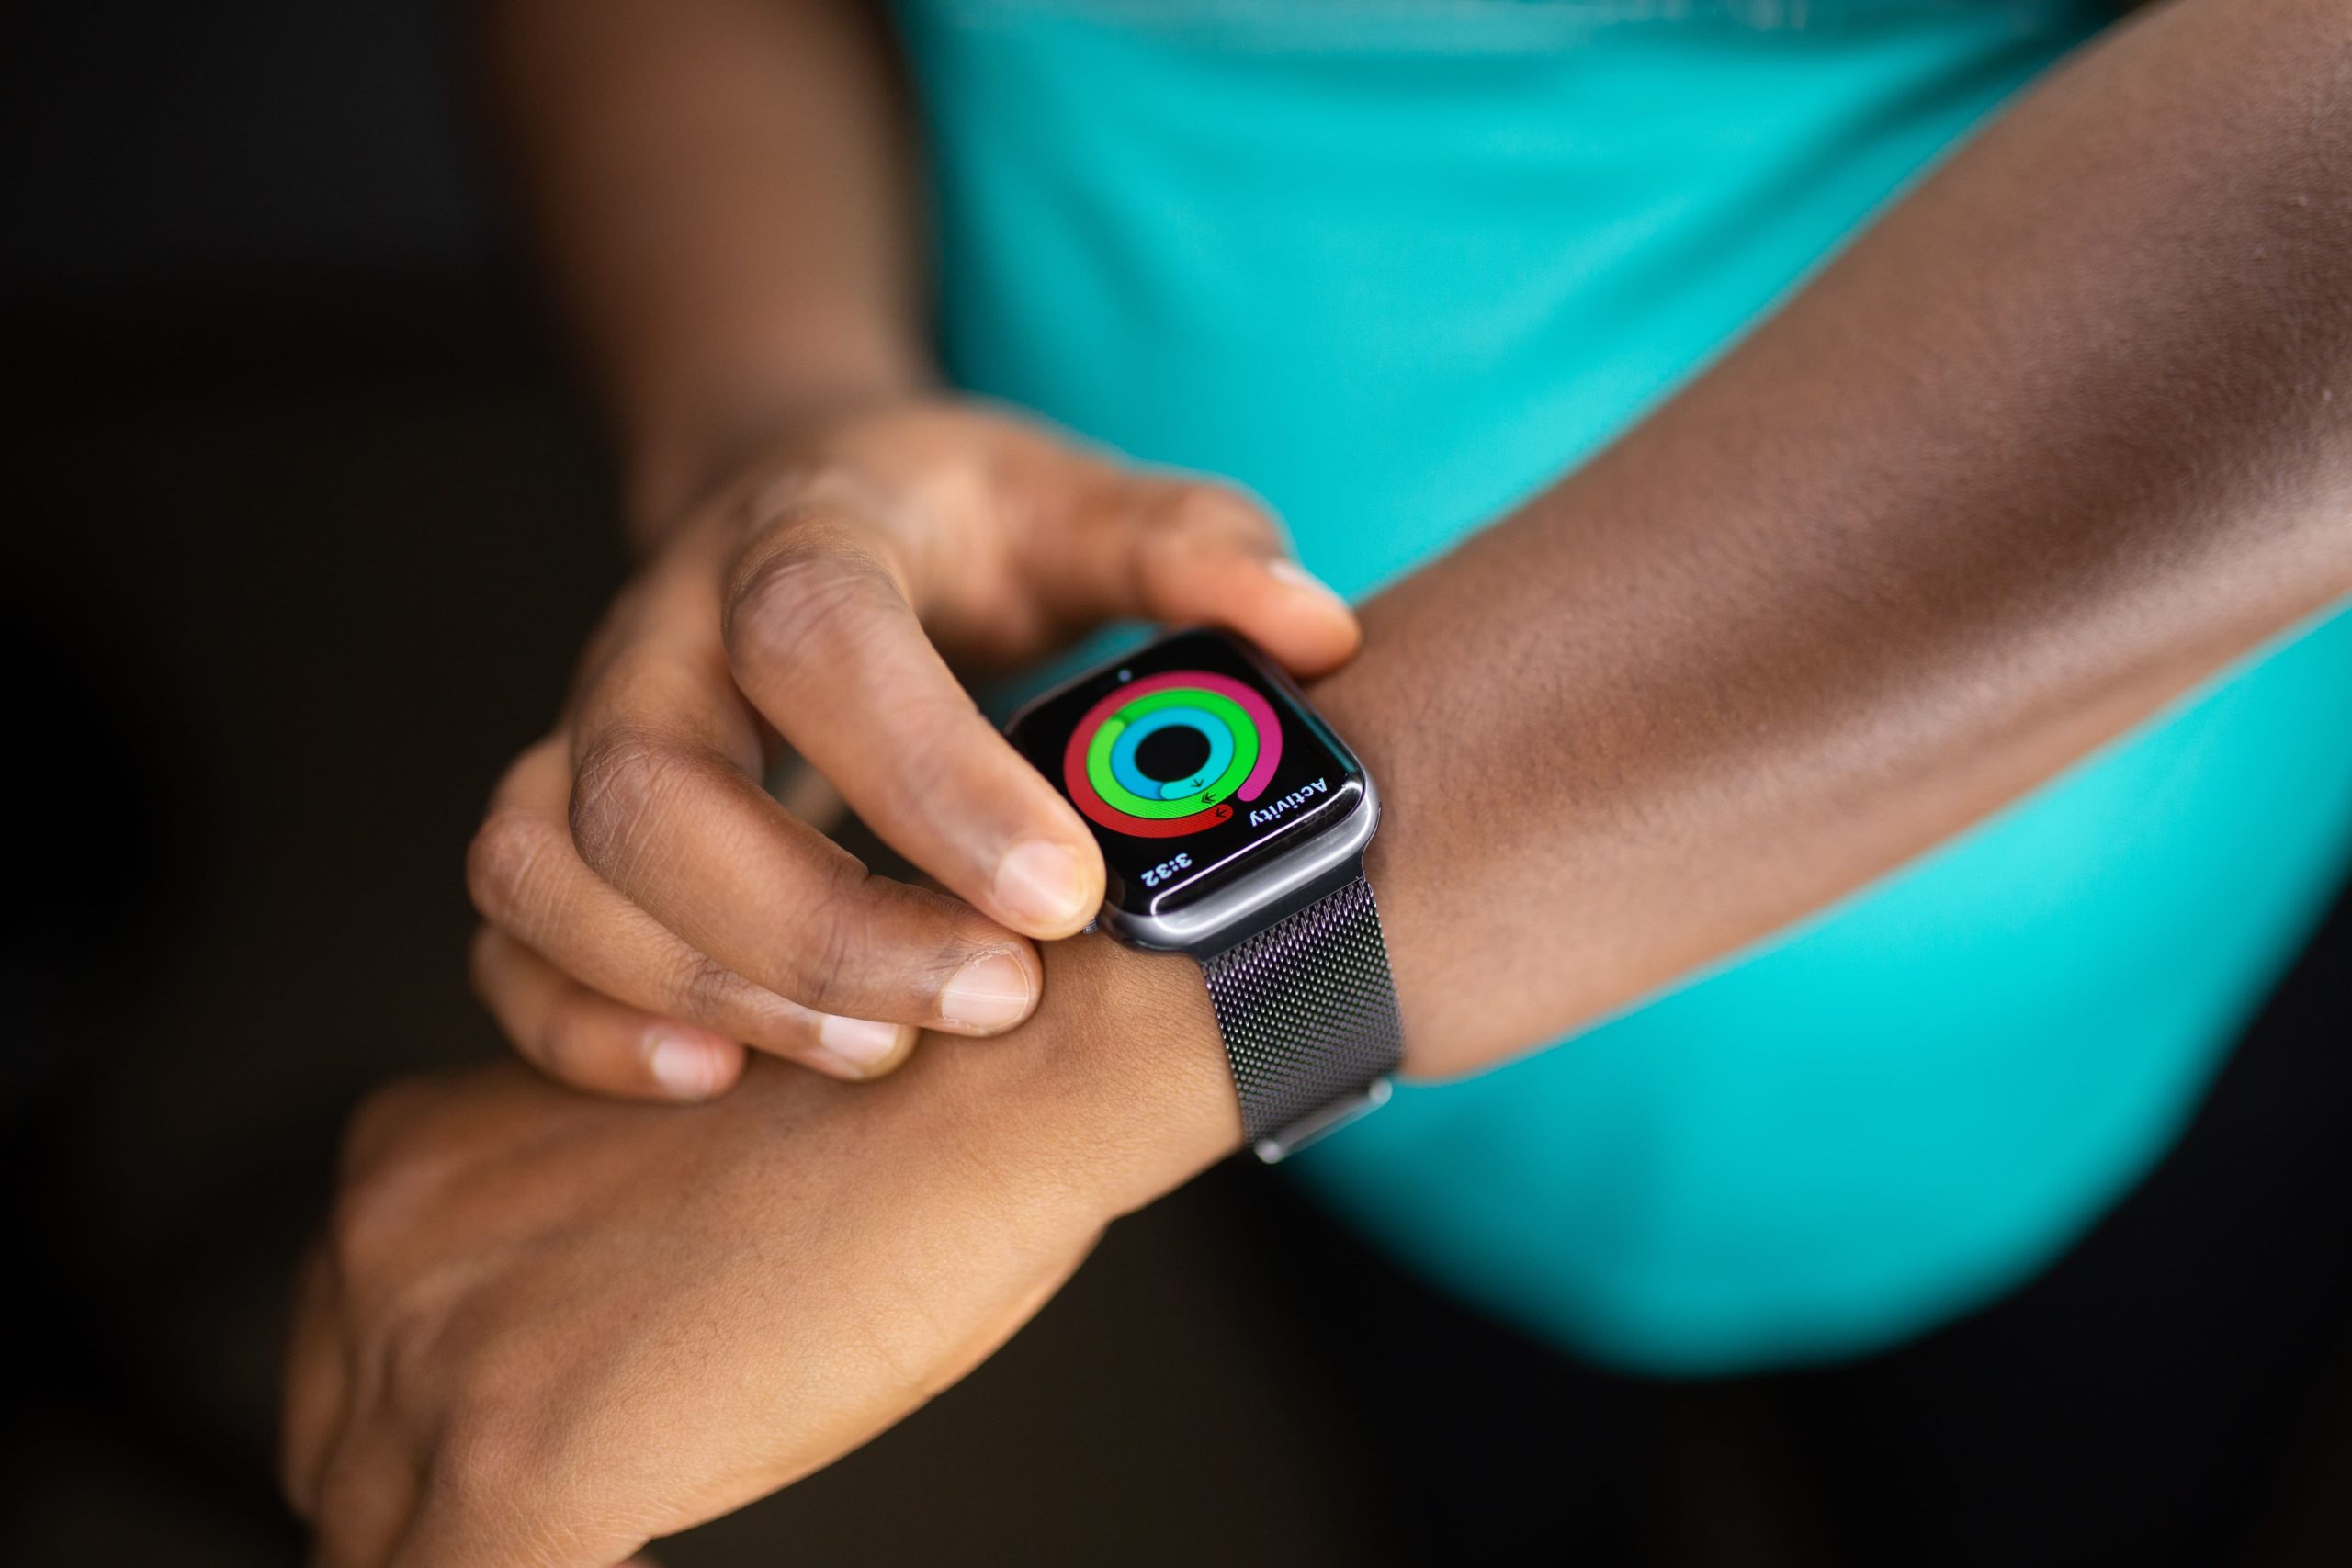 So verbessern Smartwatches deine Gesundheit